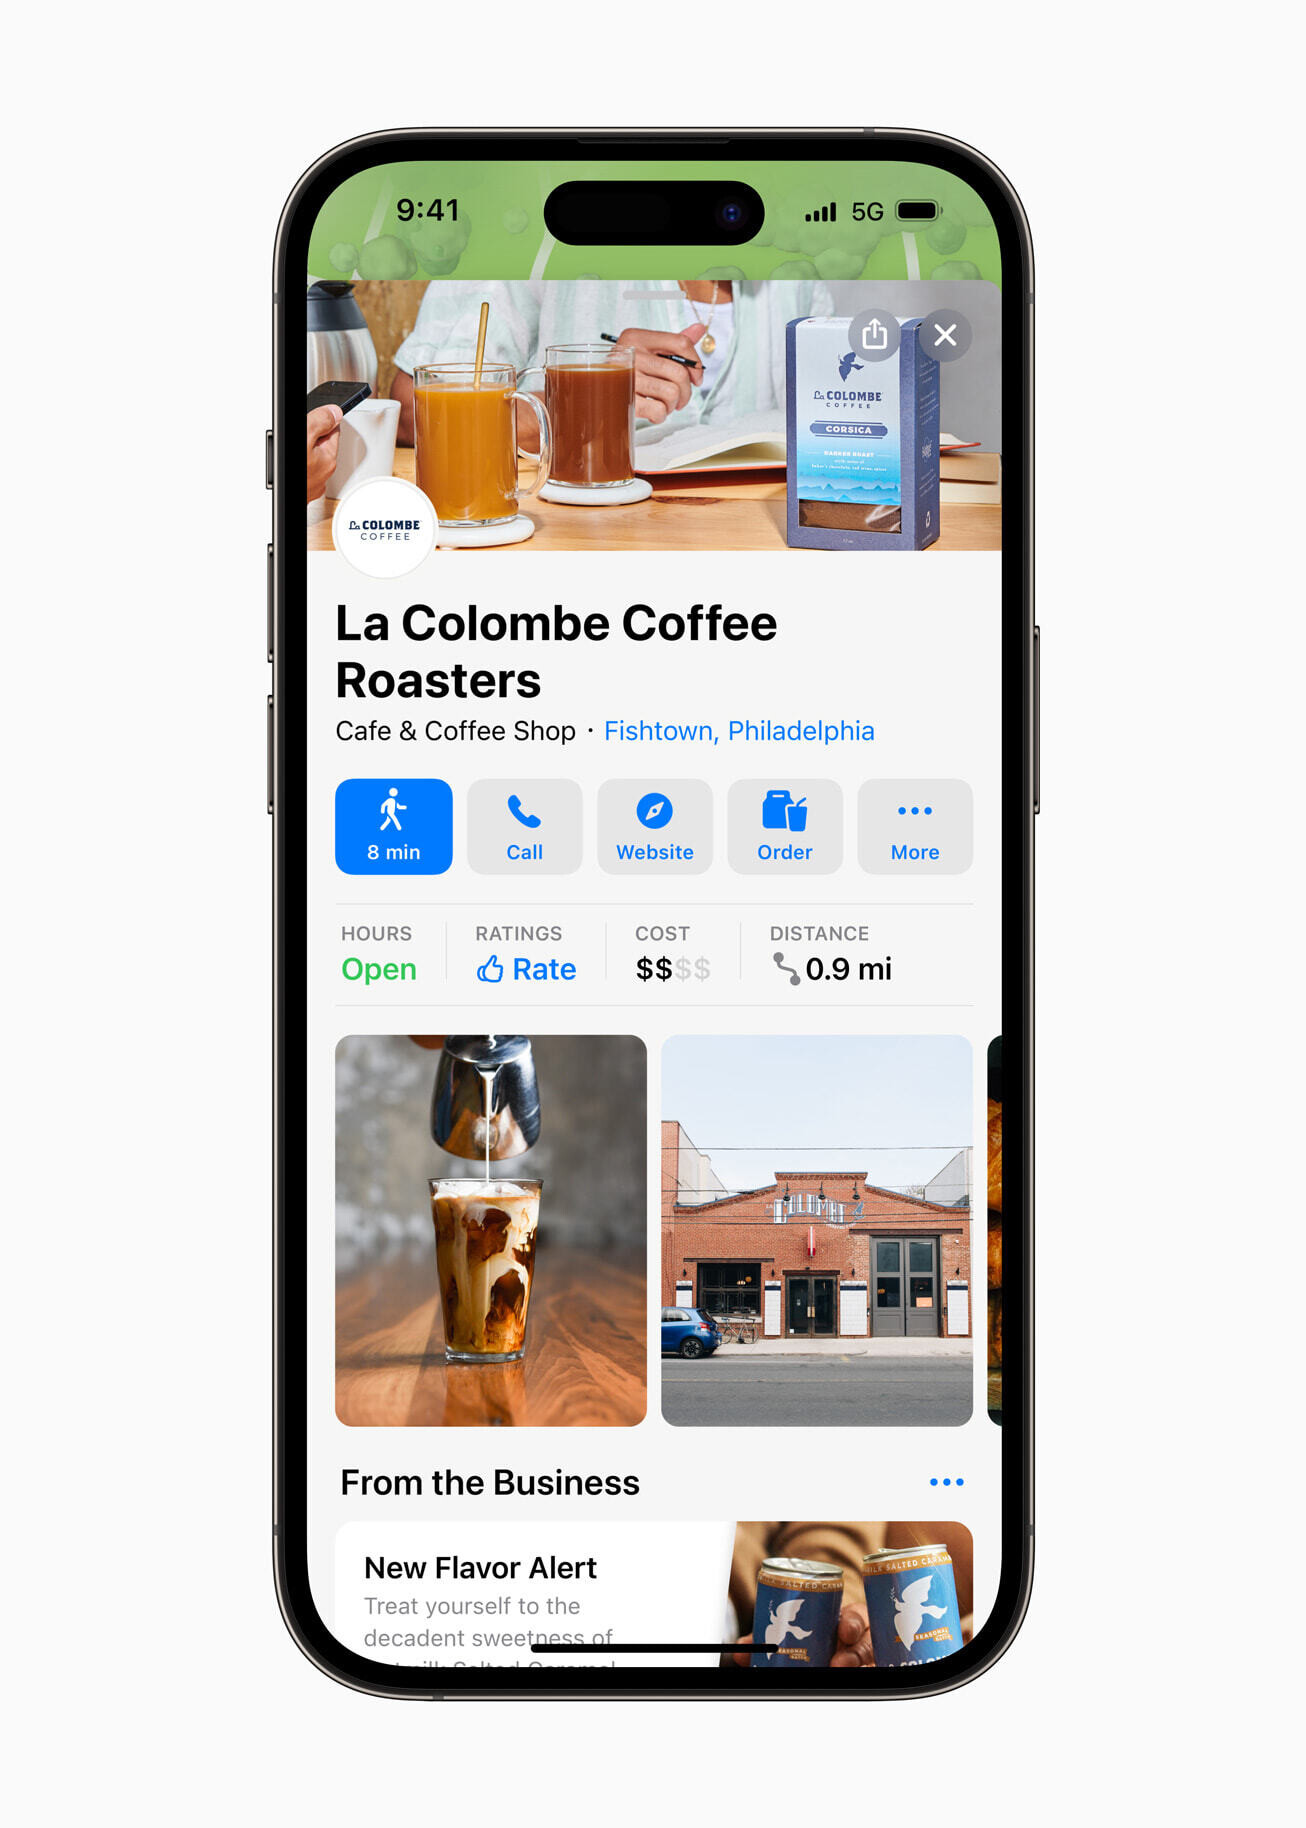 Die Karte für dieses Café enthält eine Bestellschaltfläche – Apple fügt Maps eine aufregende neue Funktion hinzu, die den Verbrauchern sehr dabei helfen wird, Dinge zu erledigen